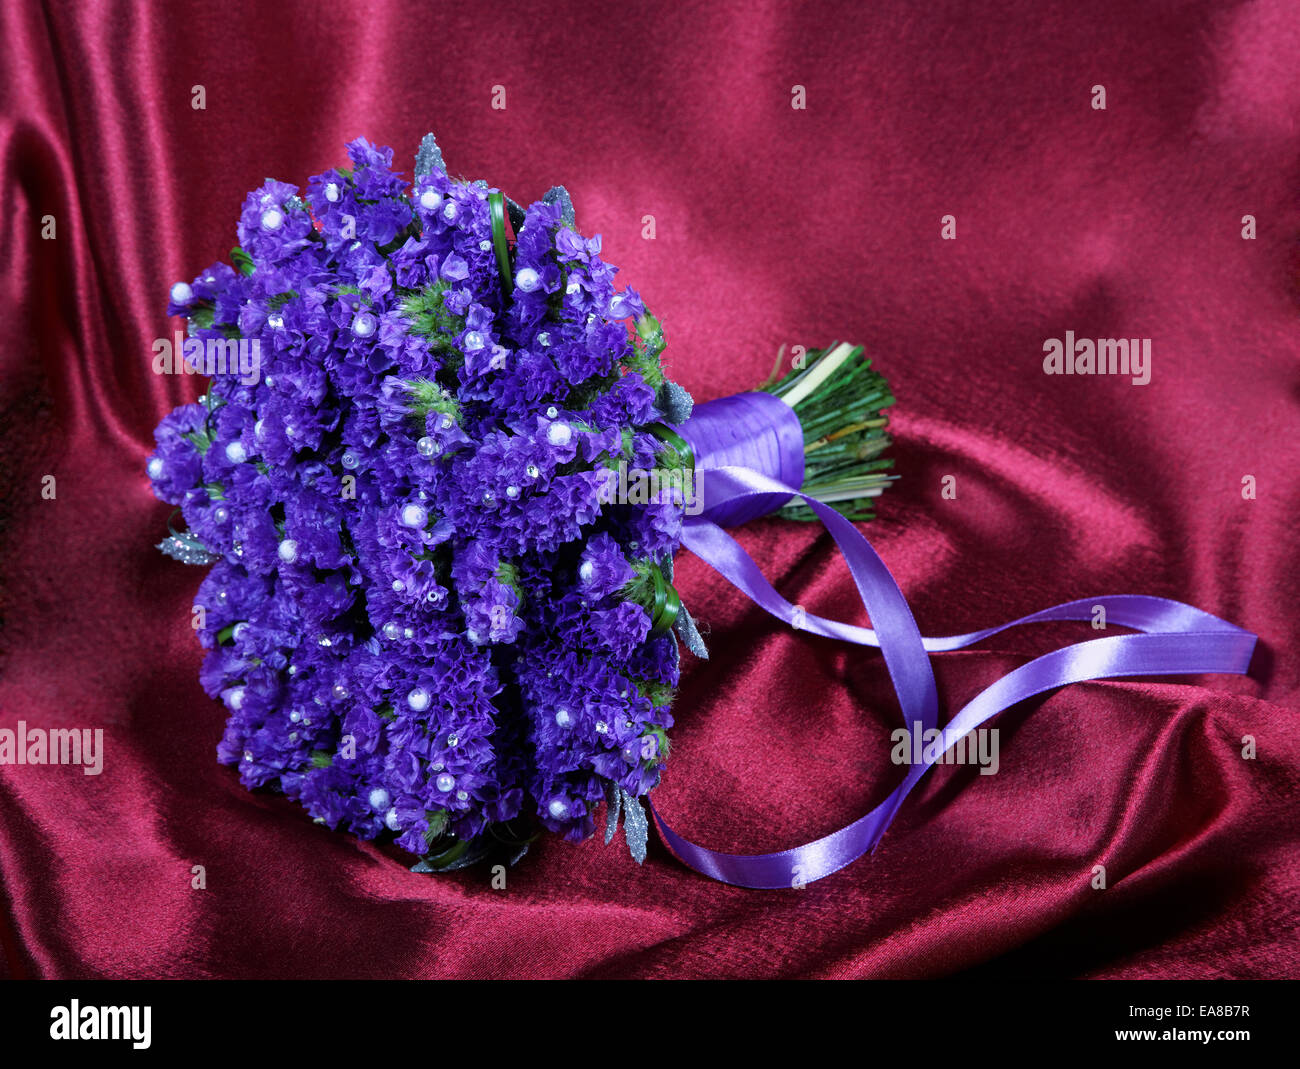 Mariage bouquet de violettes sur un tissu rouge Banque D'Images